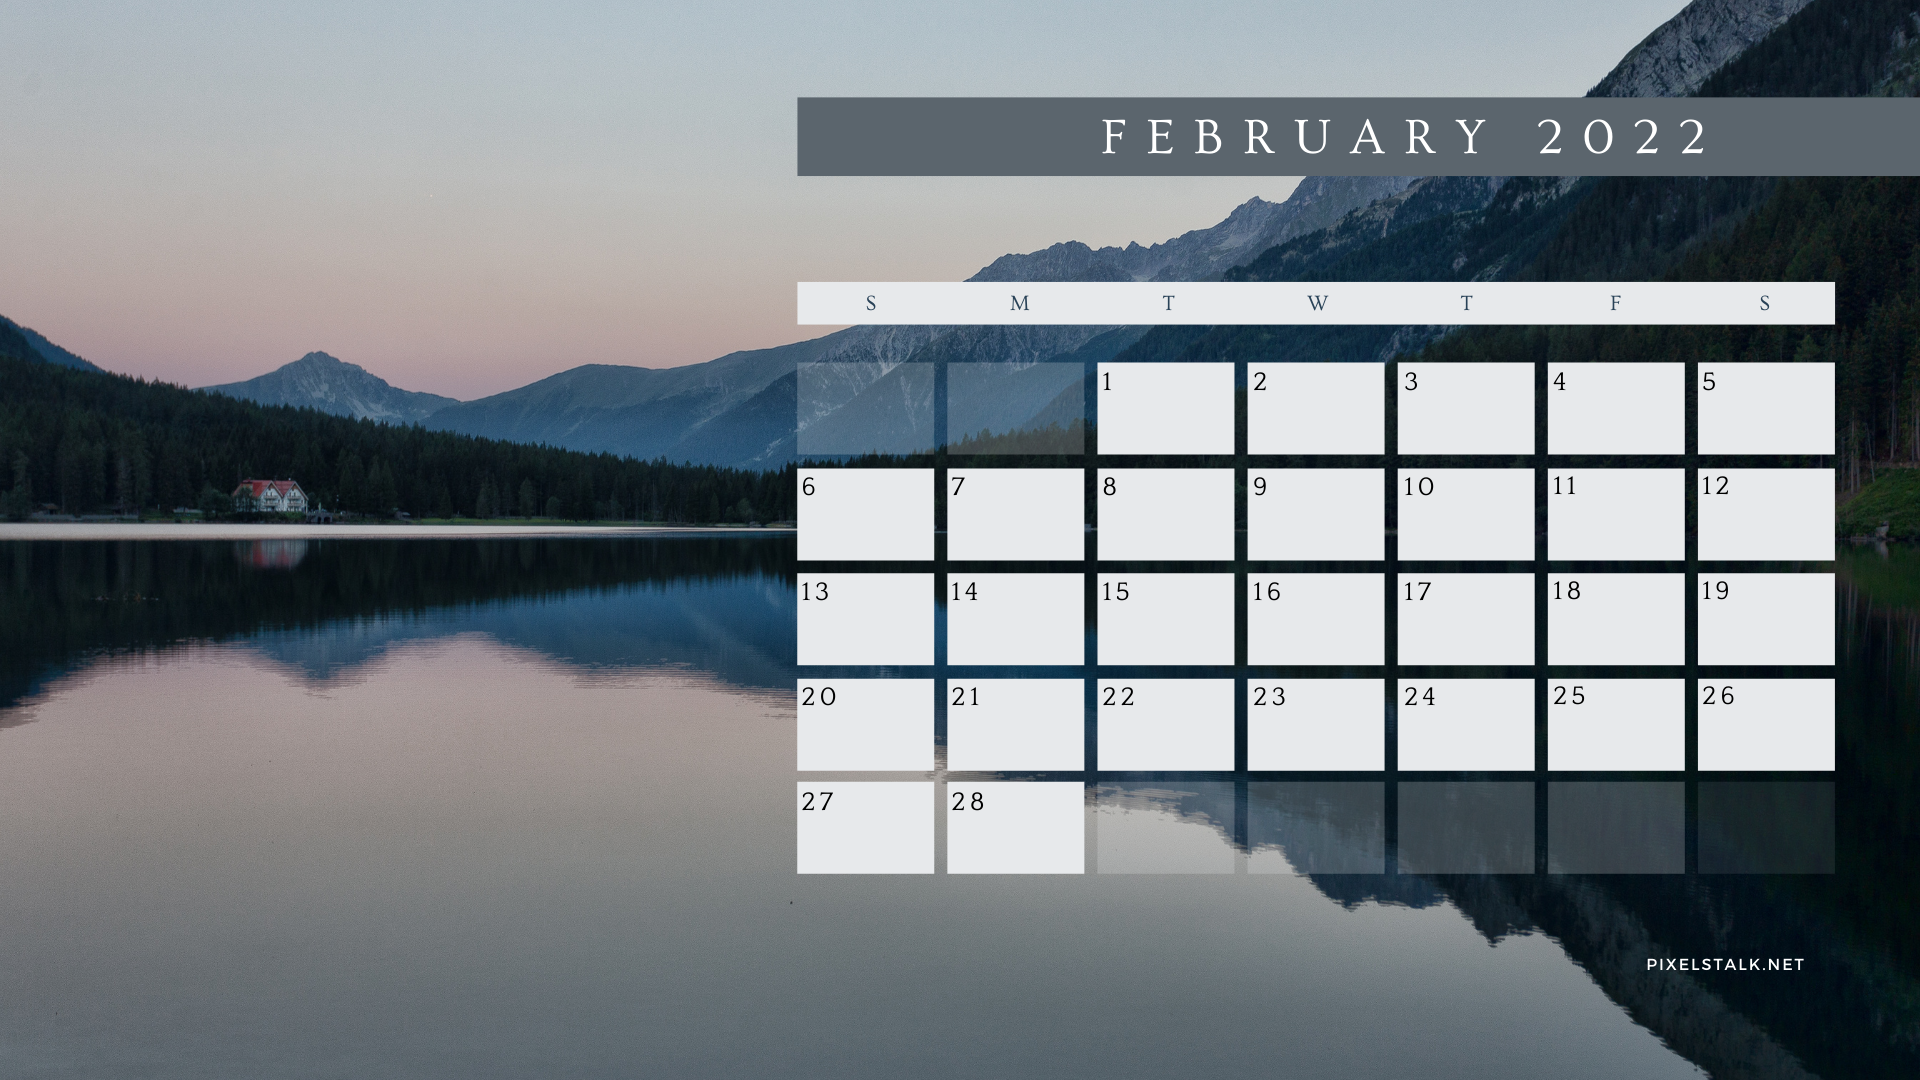 February calendar wallpapers for desktop